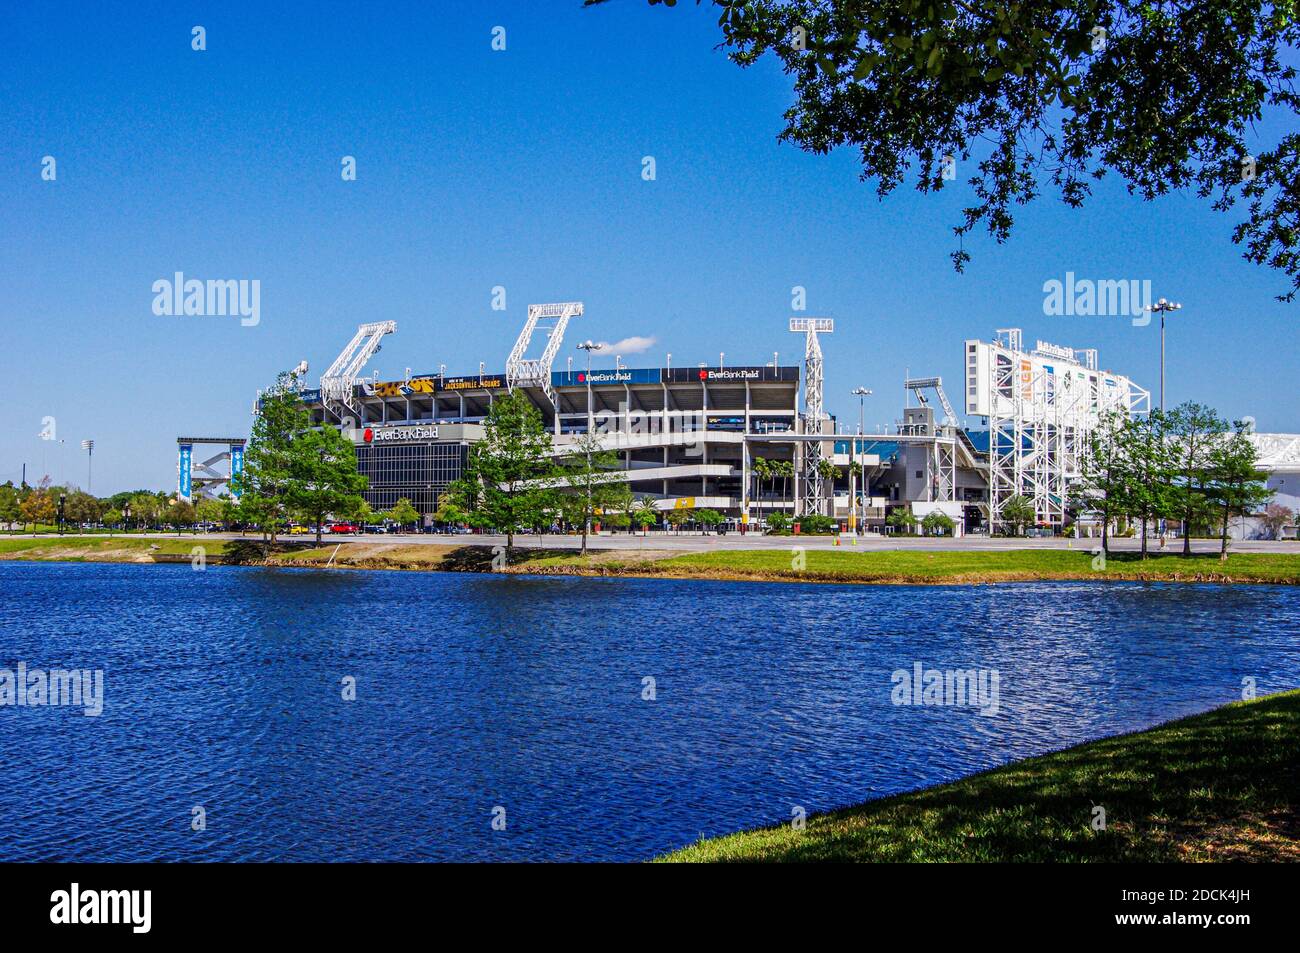 Jacksonville, FL - 18. März 2018; Blick auf Everbank Field, Heimstadion der Jaguars NFL Fußballmannschaft in der Innenstadt mit Teich und Landschaft im Vordergrund. Stockfoto